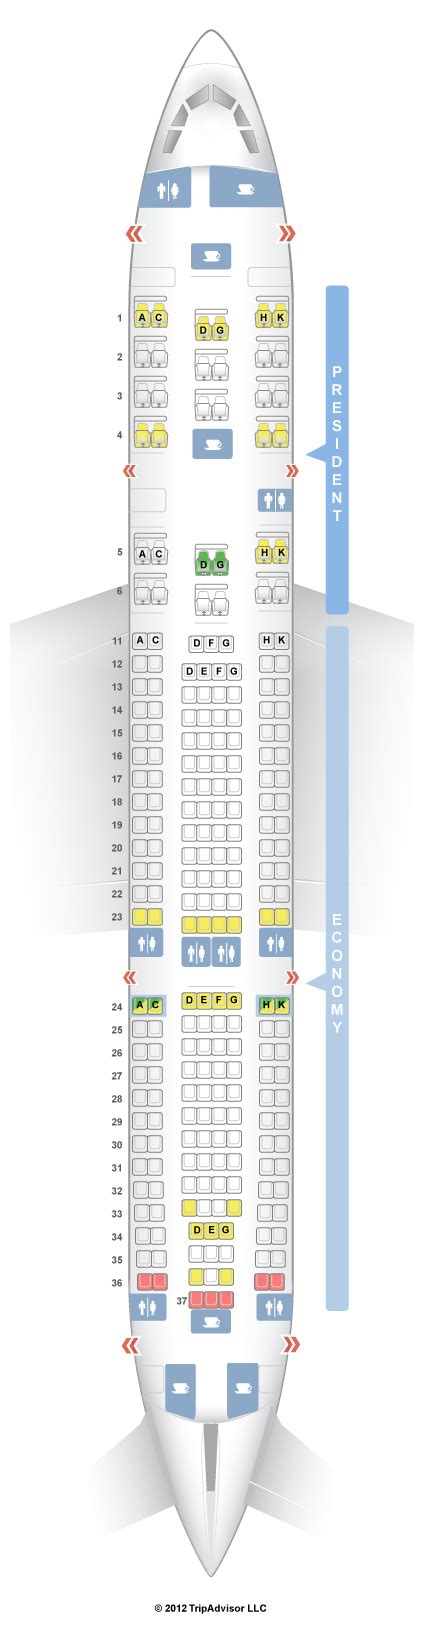 A330 200 Iberia Sitzplan Sitzplan Auf Deutsch